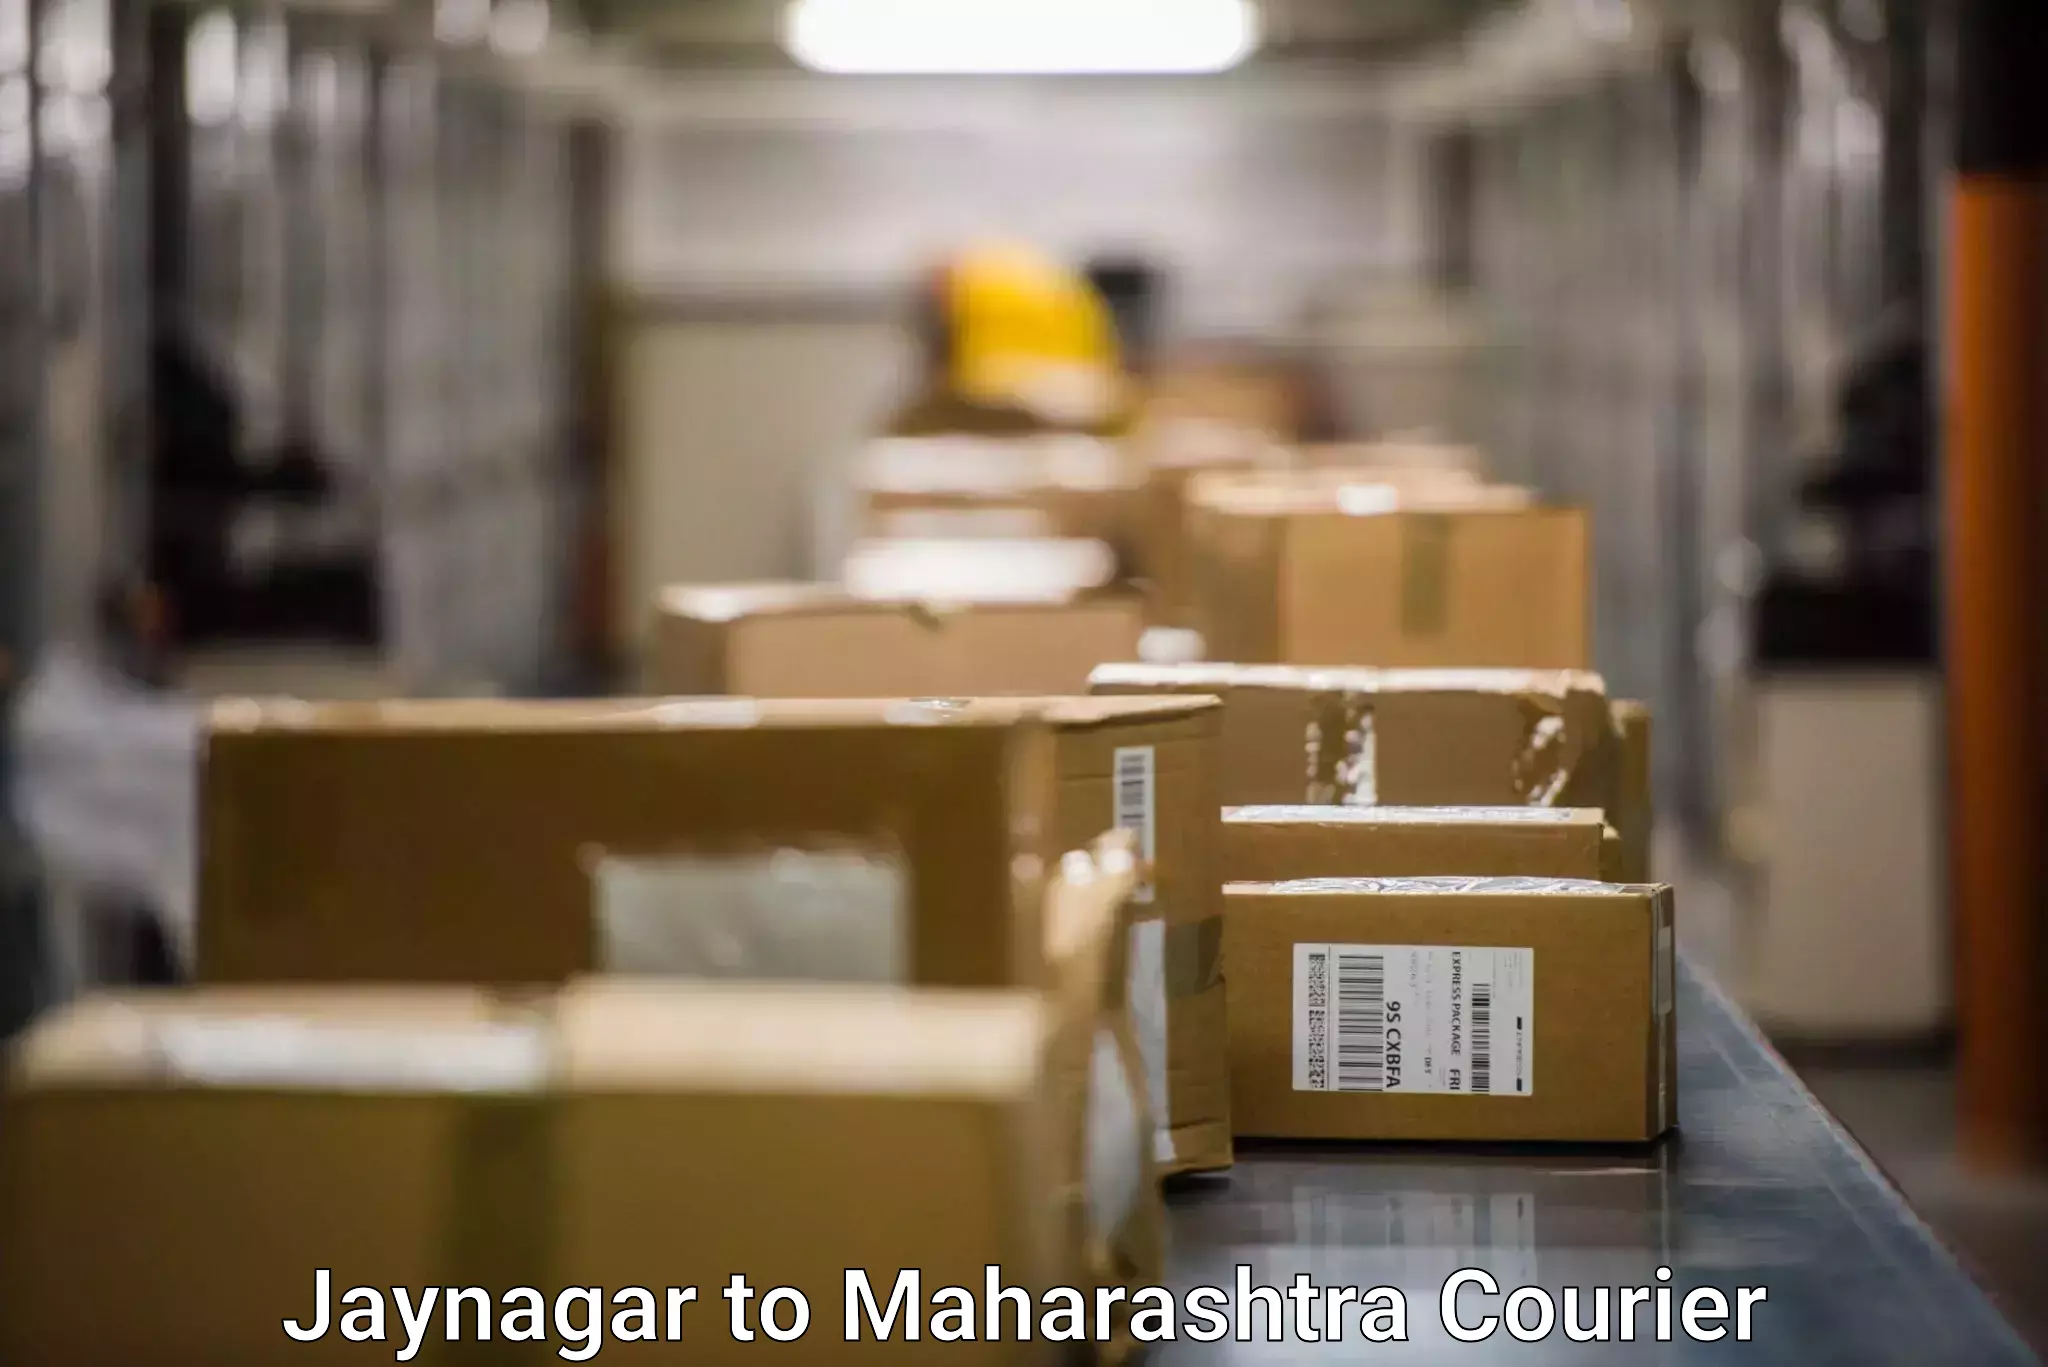 International parcel service Jaynagar to Chembur